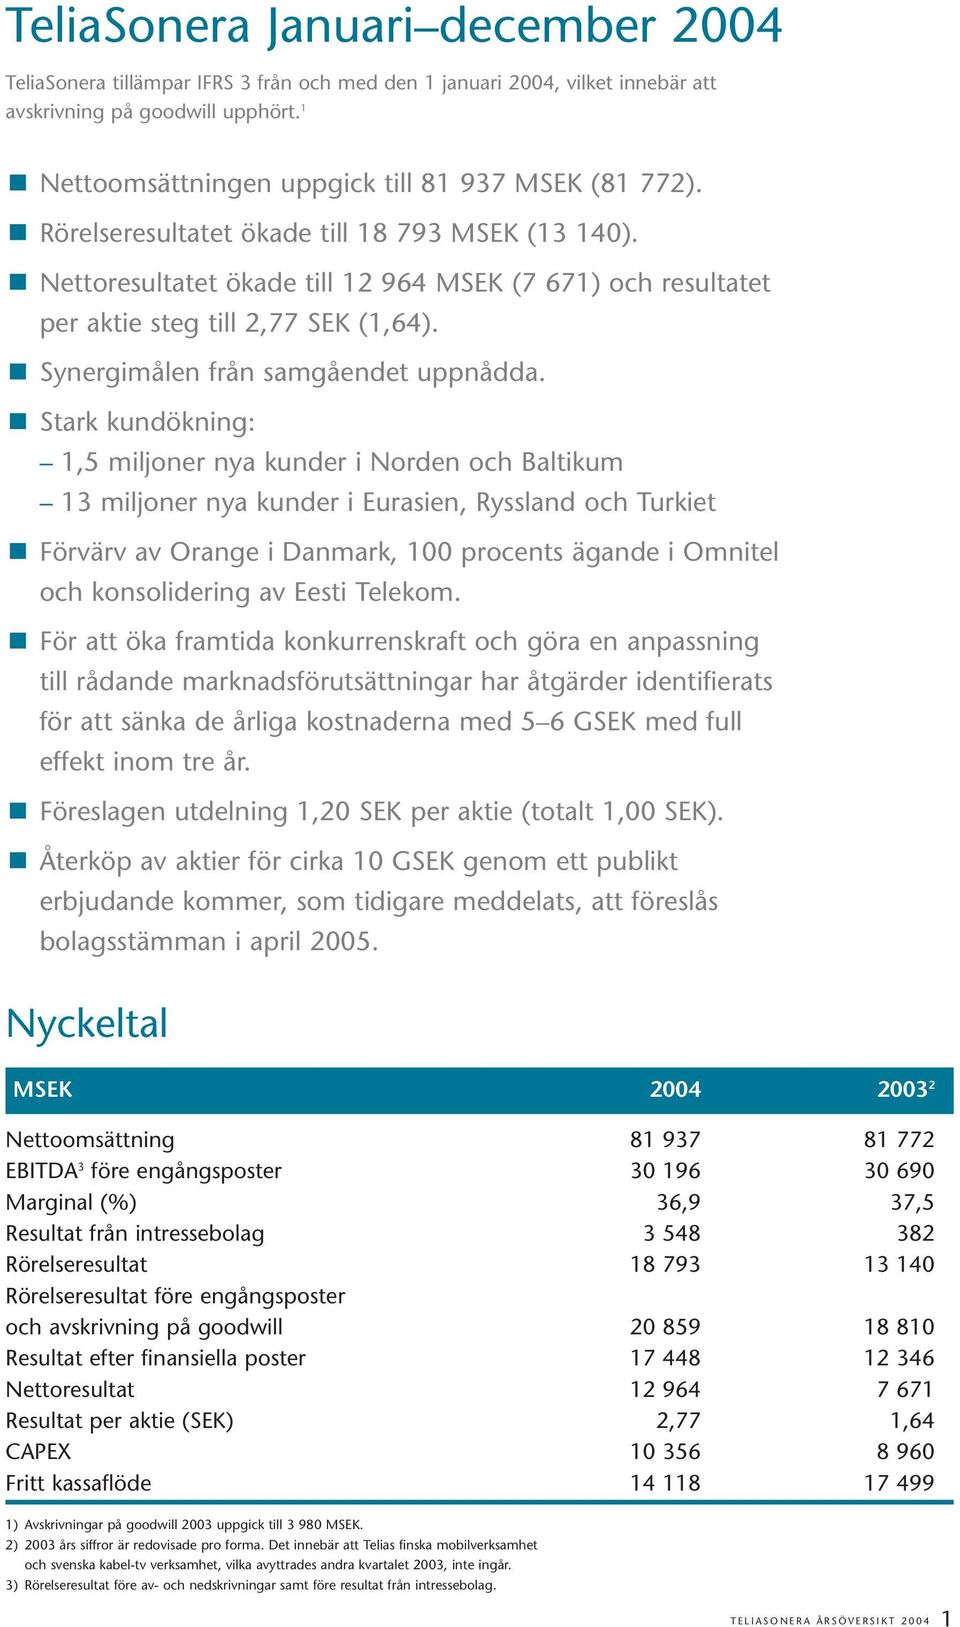 Nettoresultatet ökade till 12 964 MSEK (7 671) och resultatet per aktie steg till 2,77 SEK (1,64). Synergimålen från samgåendet uppnådda.